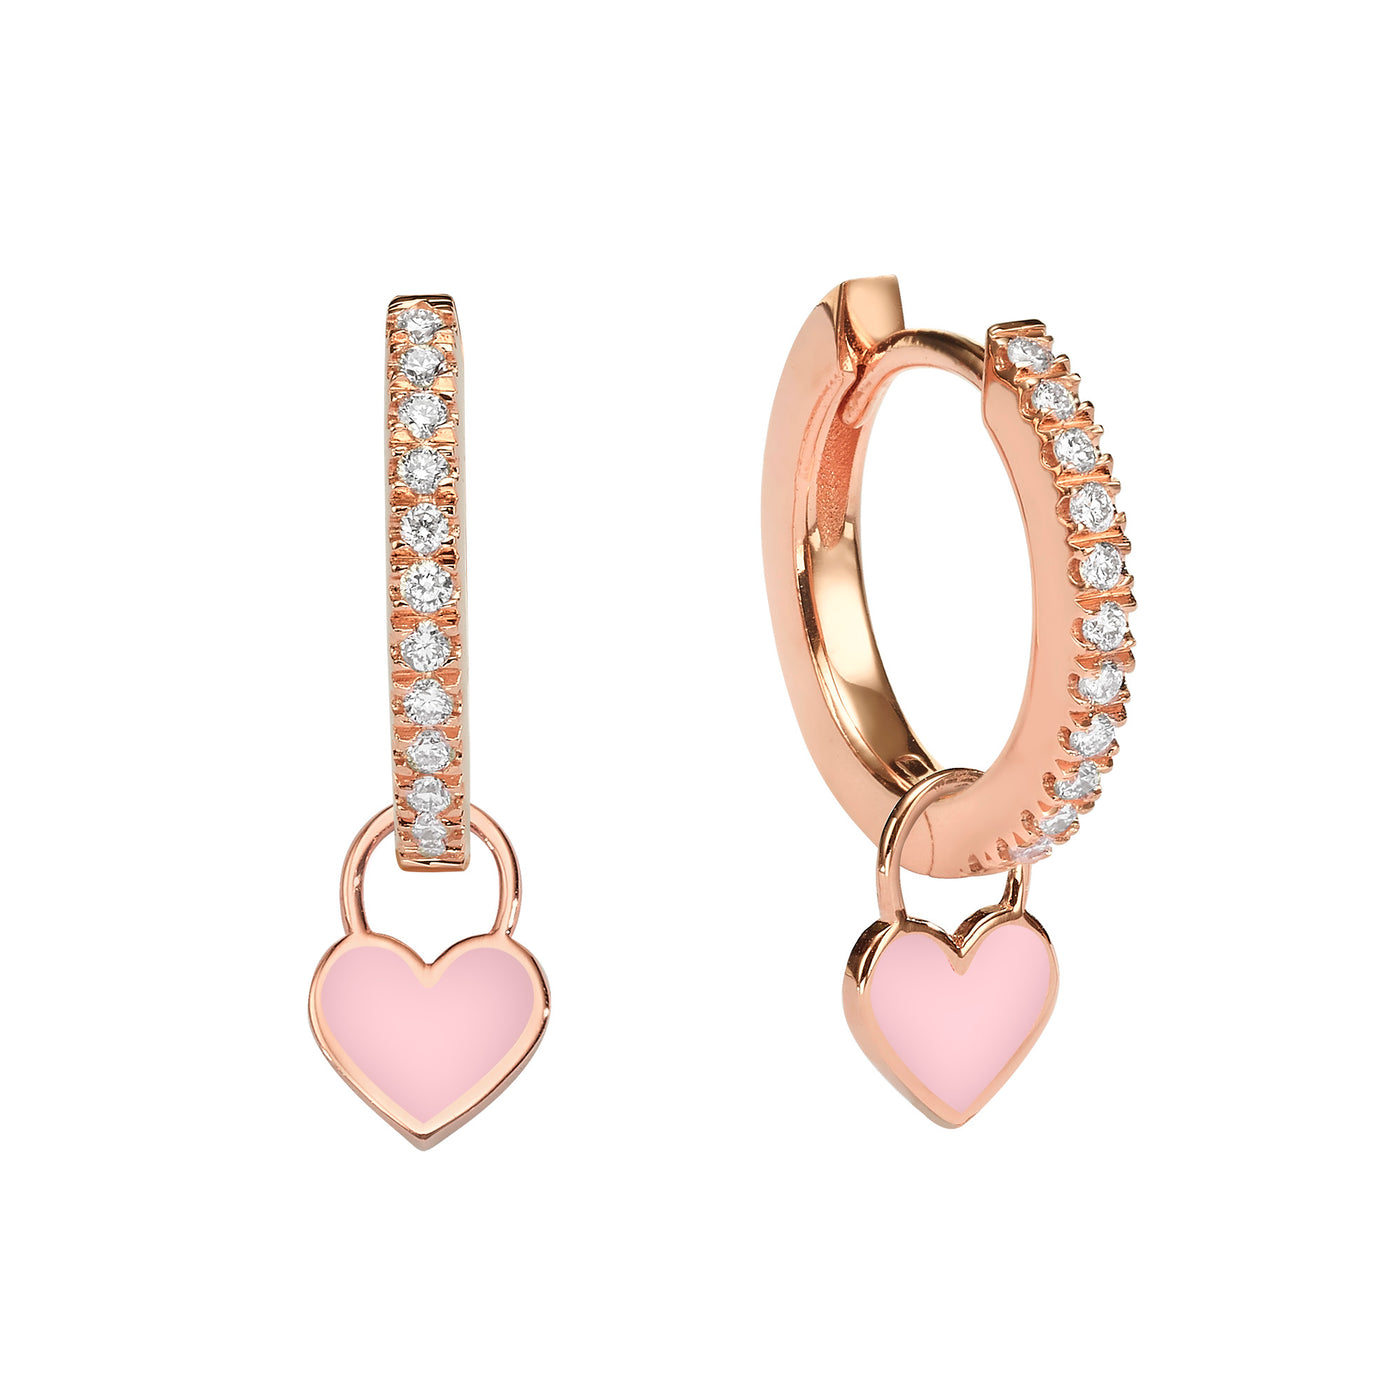 Midi Gypsy hearts earrings- Light pink